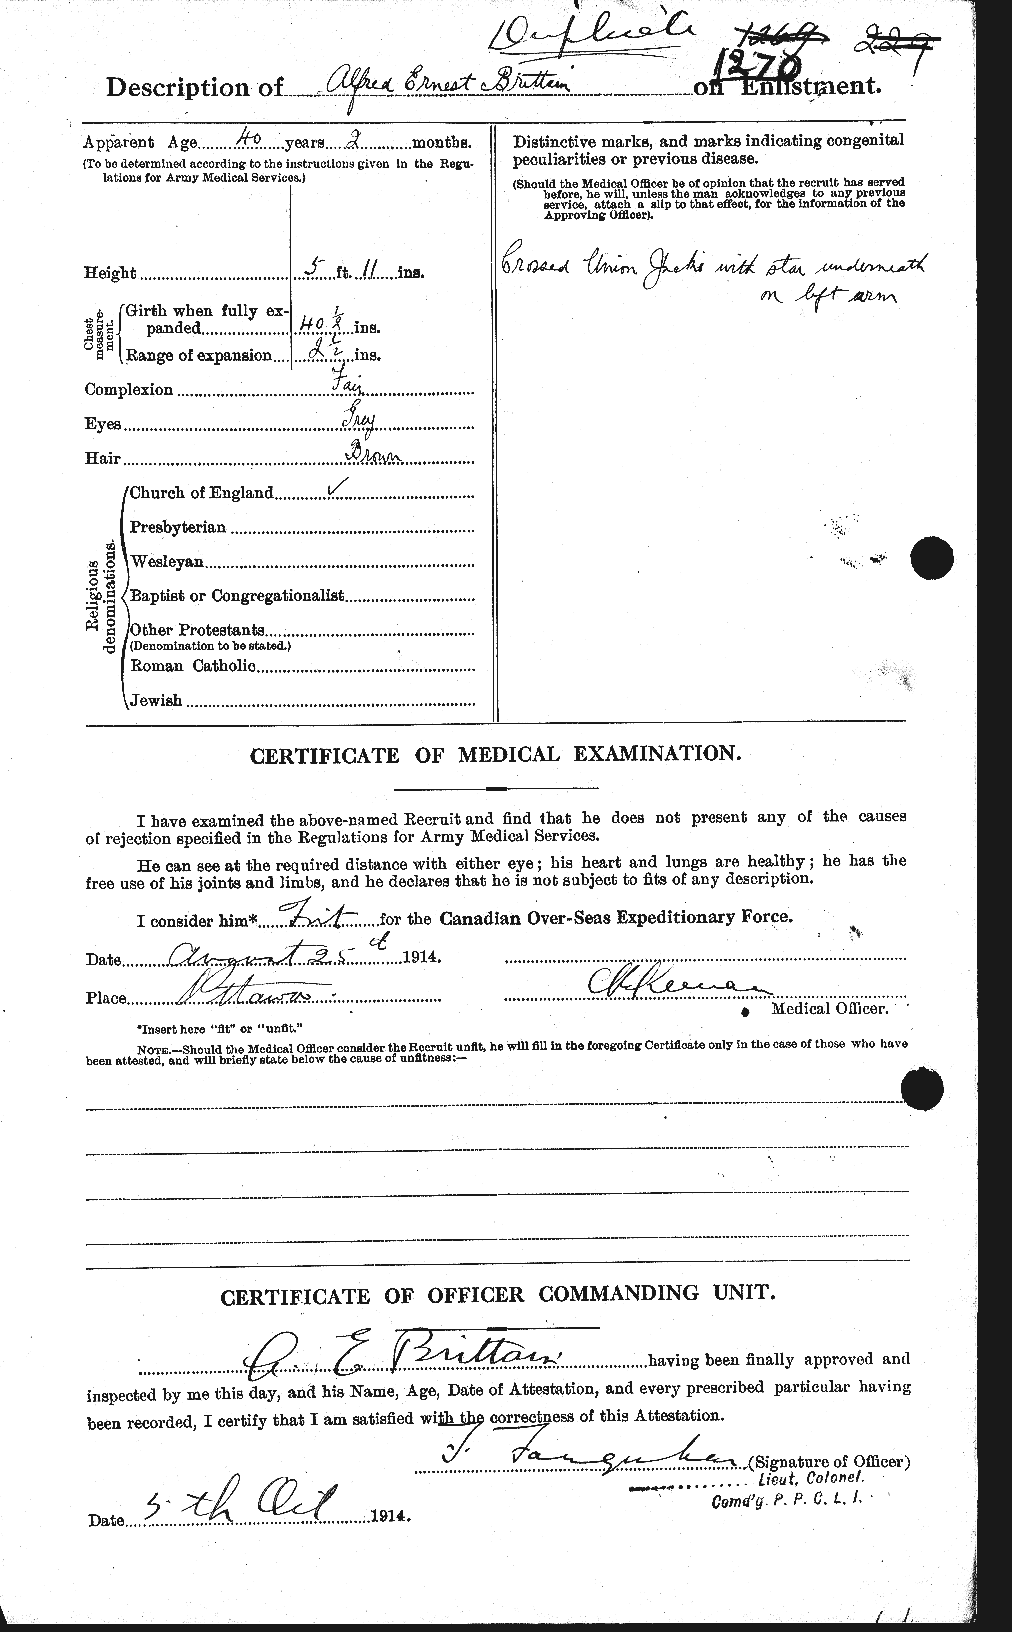 Dossiers du Personnel de la Première Guerre mondiale - CEC 261834b